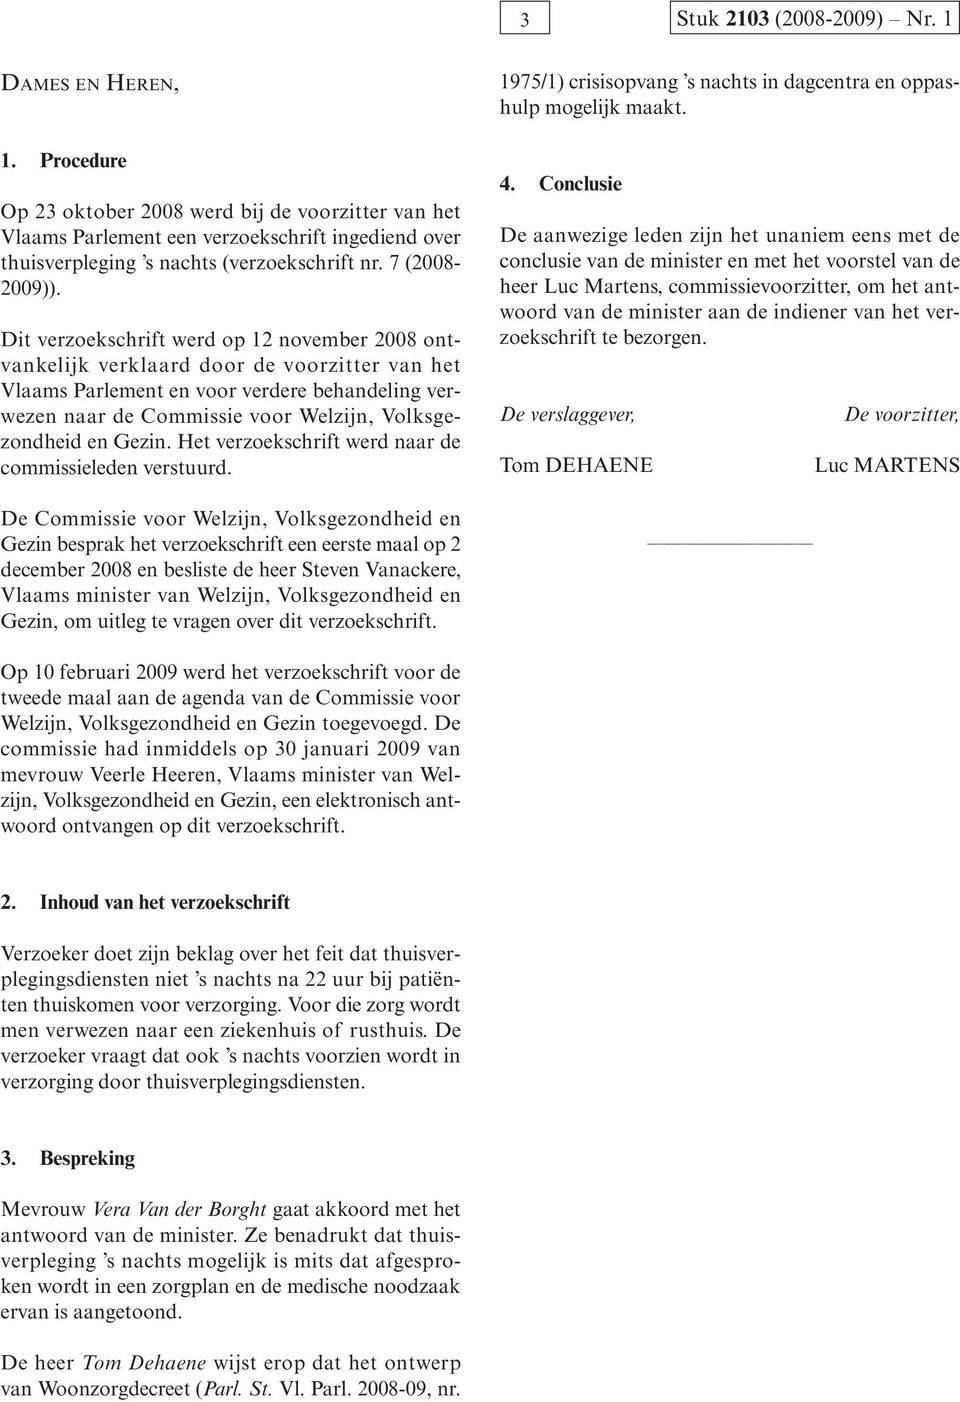 Dit verzoekschrift werd op 12 november 2008 ontvankelijk verklaard door de voorzitter van het Vlaams Parlement en voor verdere behandeling verwezen naar de Commissie voor Welzijn, Volksgezondheid en